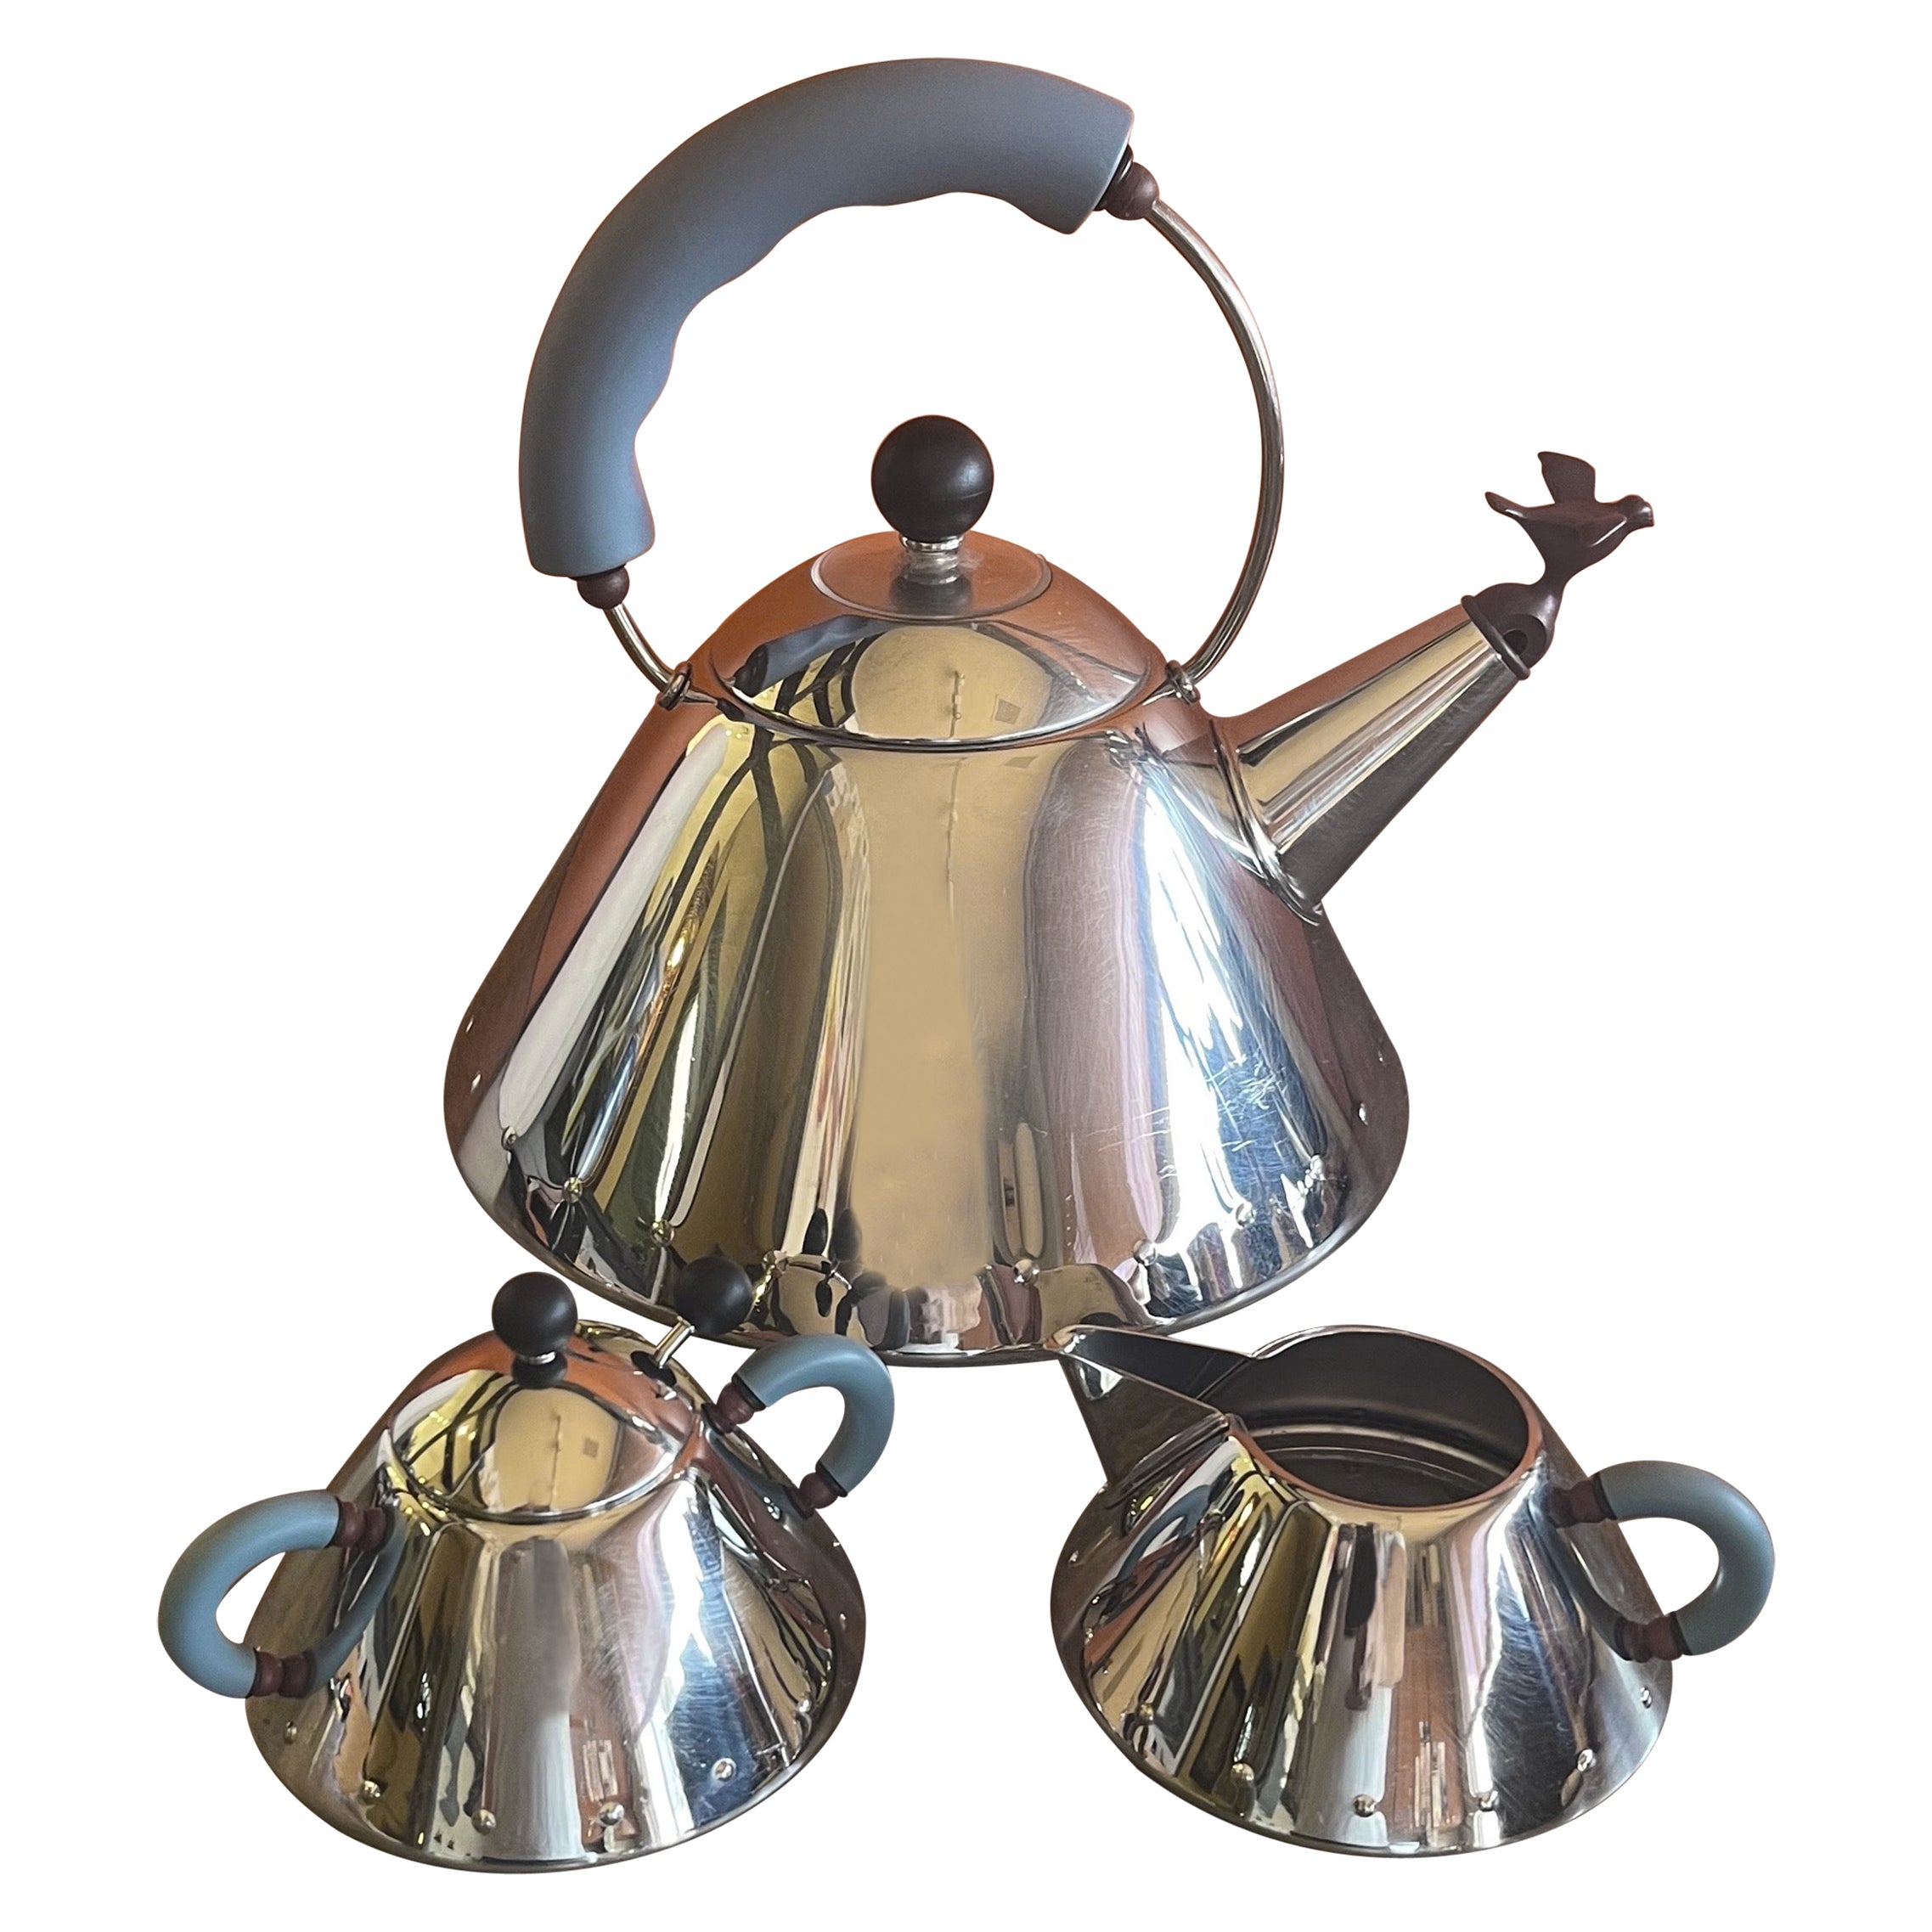 Alessi Tea Set - 3 For Sale on 1stDibs | alessi tea kettle, alessi tea 